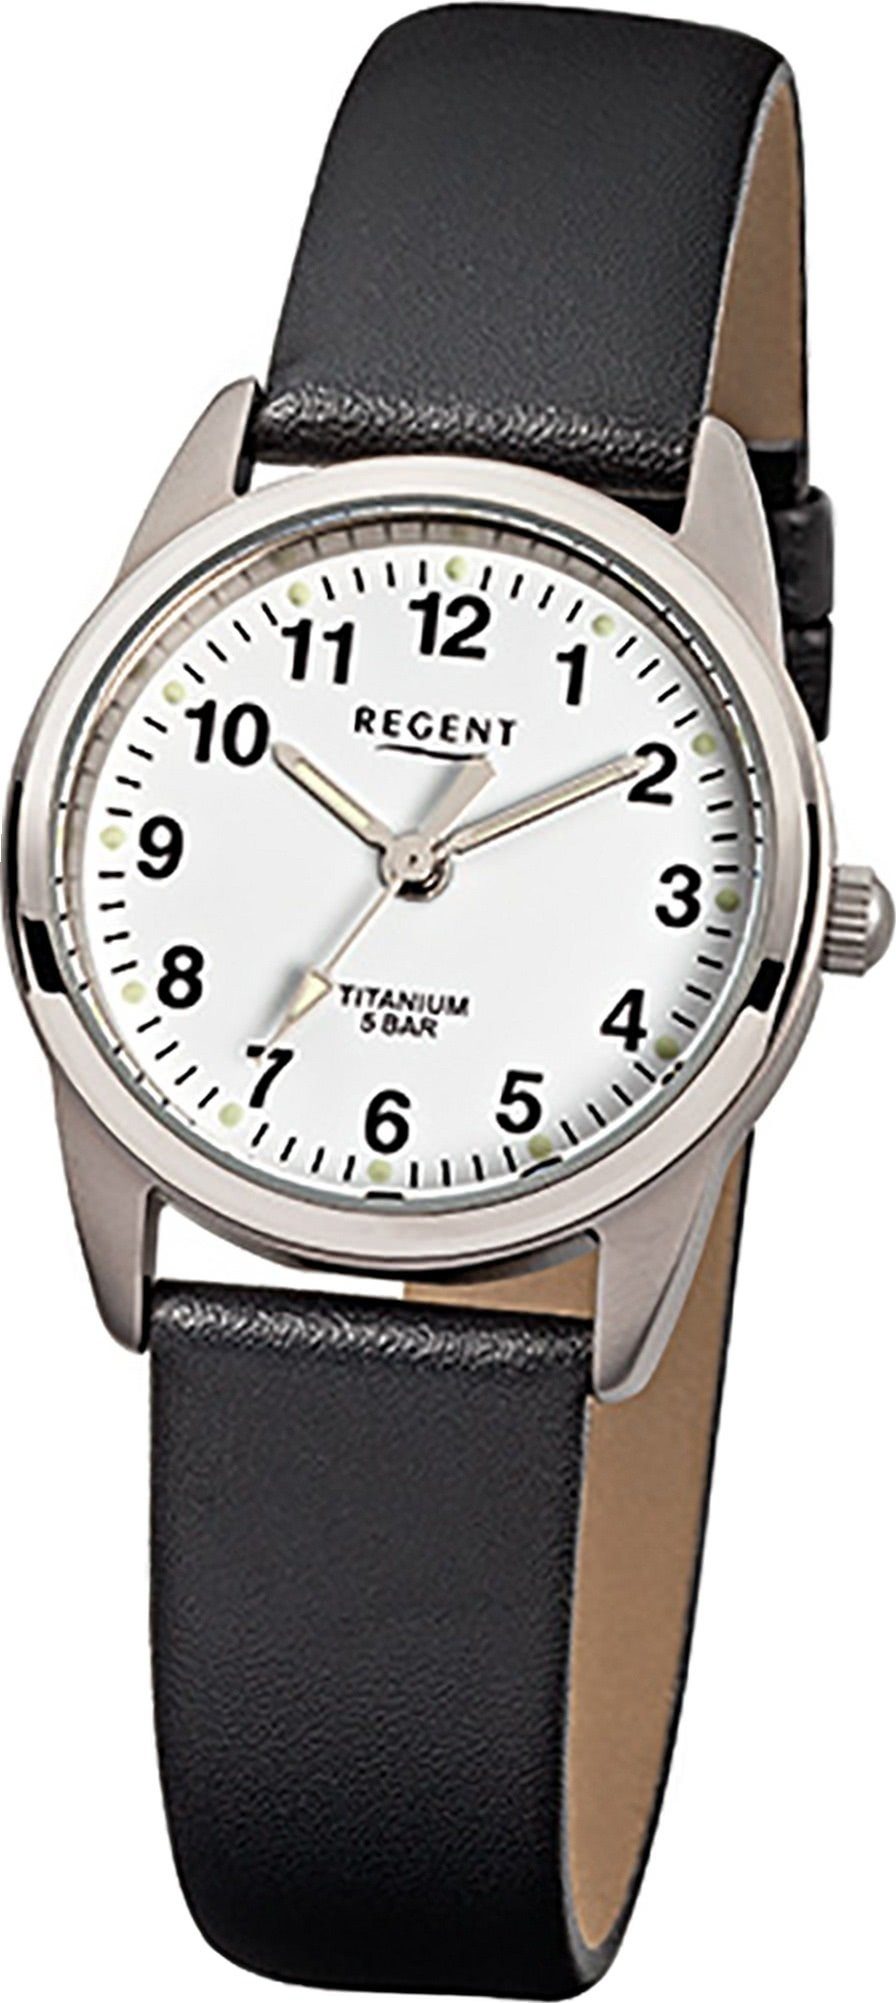 Regent Quarzuhr Regent Leder Damen Uhr F-441 Quarzuhr, Damenuhr Lederarmband schwarz, rundes Gehäuse, klein (ca. 26mm)